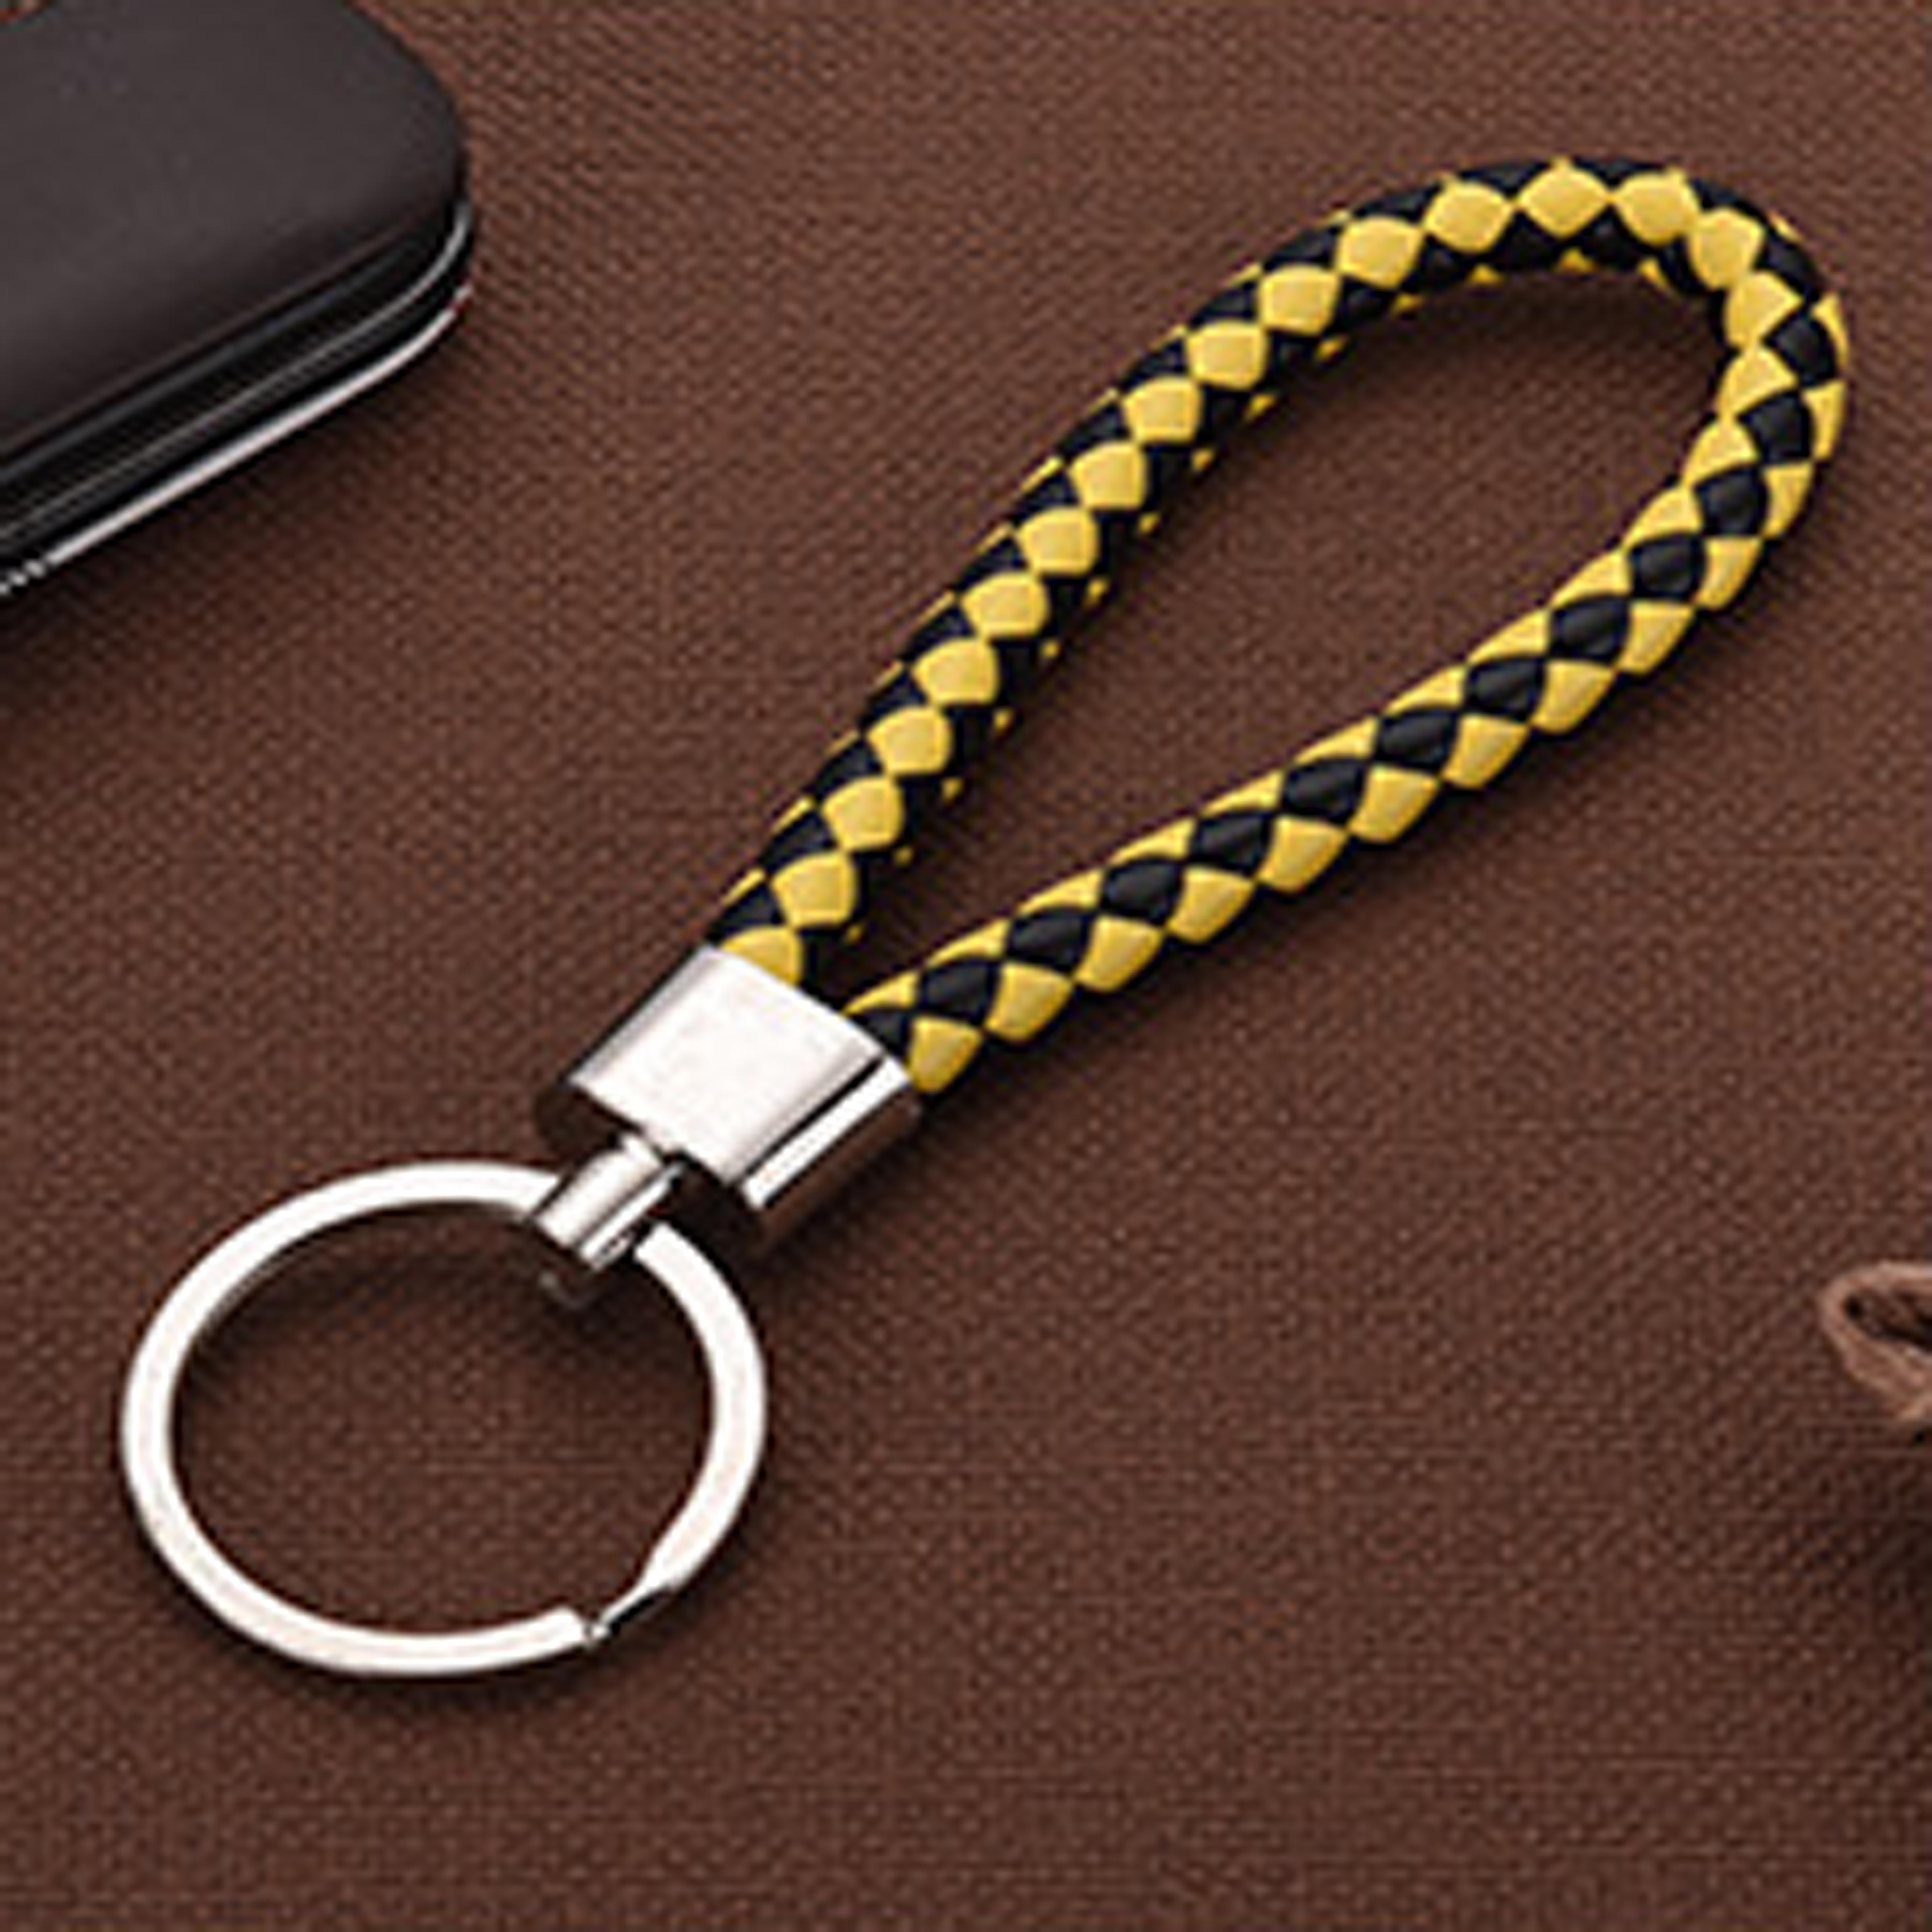 พวงกุญแจสร้างสรรค์  เชือกหนังถักด้วยมือ พวงกุญแจหัวอัลลอยใหม่ simple key chain